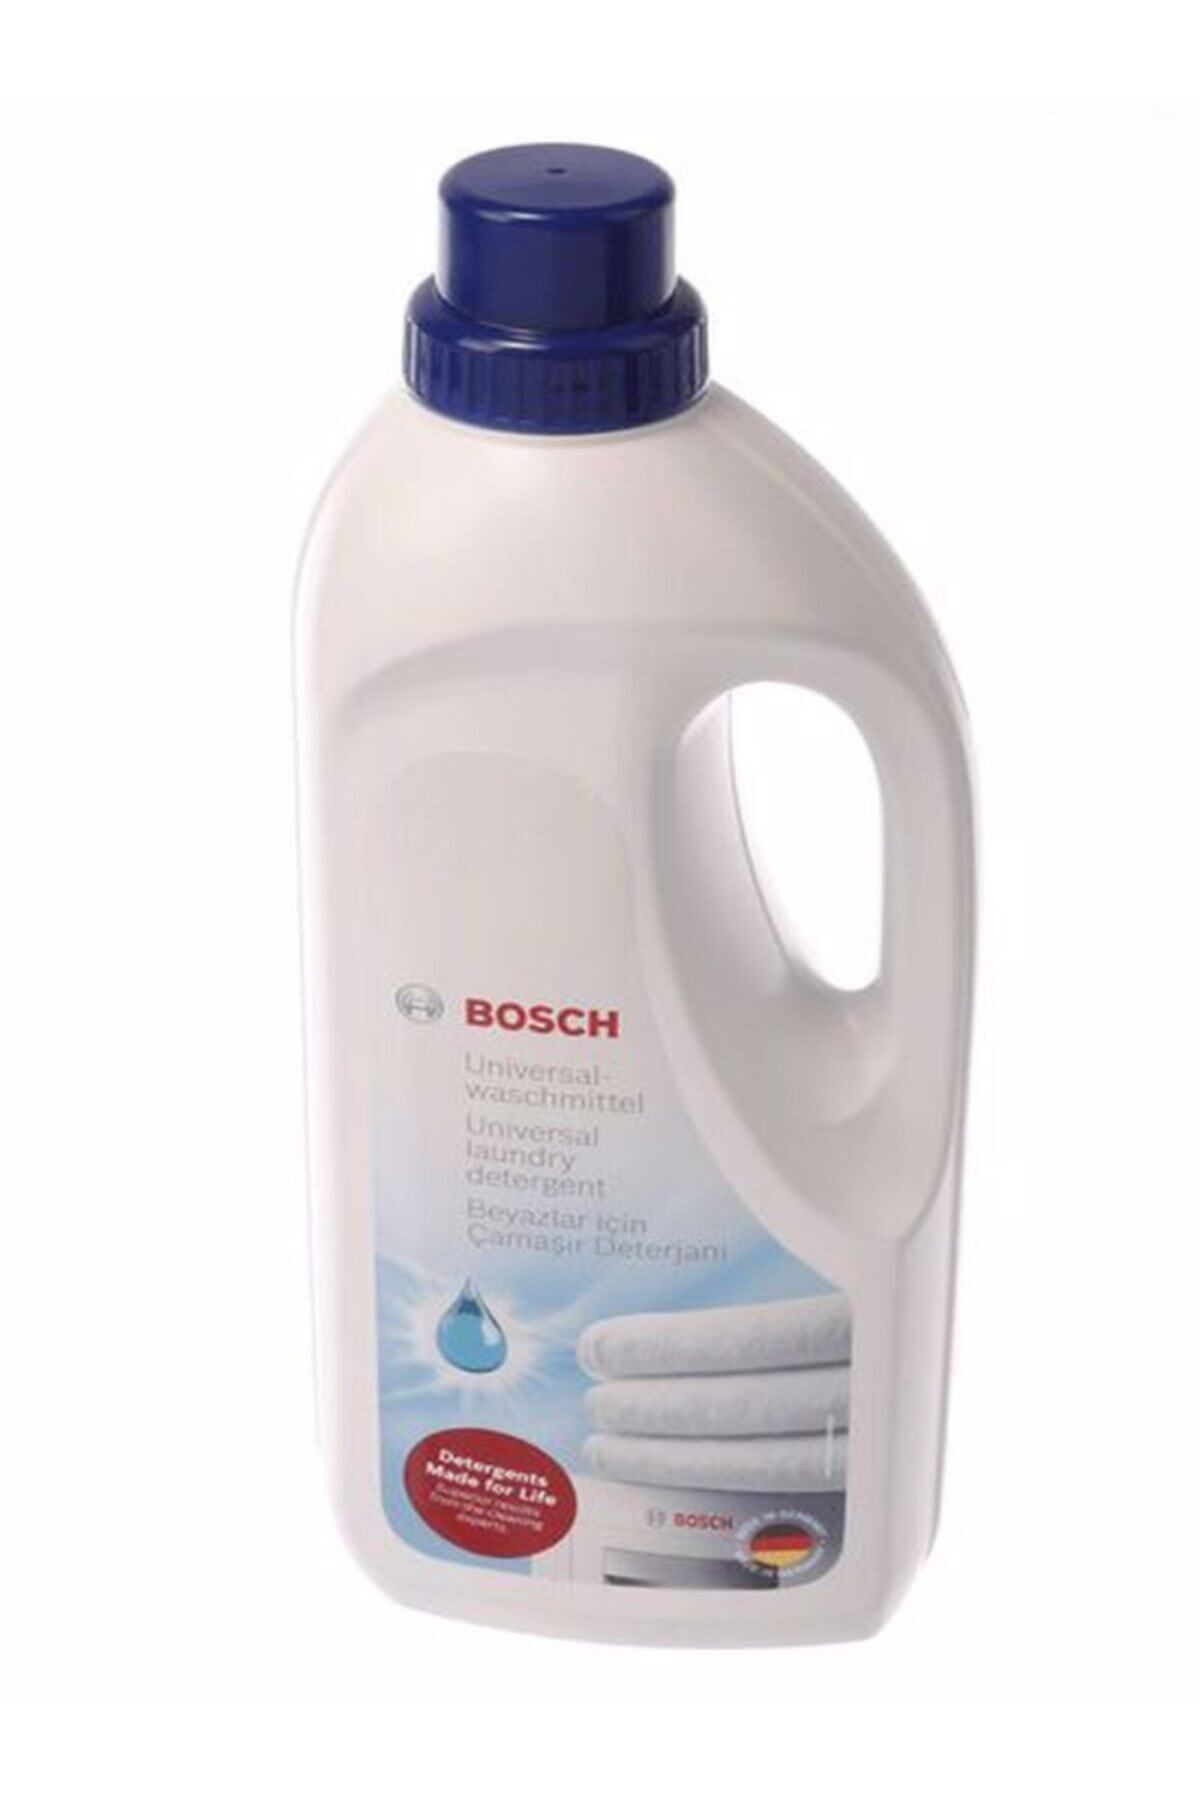 Bosch Beyazlar İçin Sıvı Çamaşır Deterjanı 1,25 lt